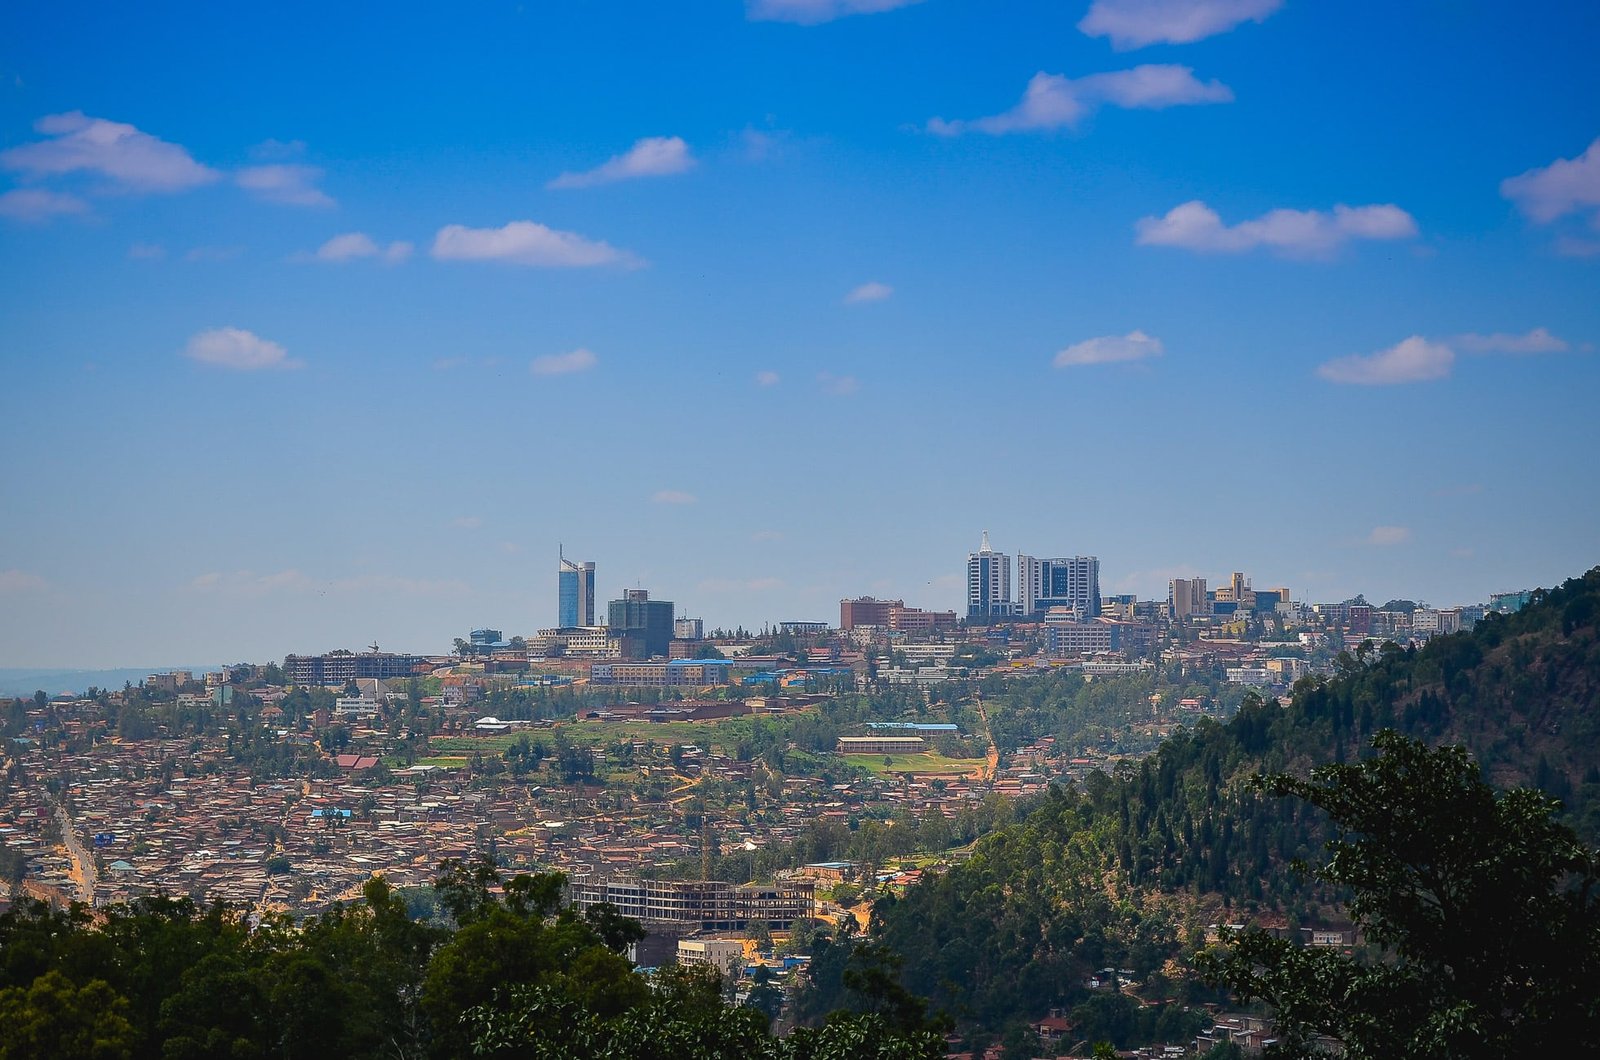 The city of Kigali in Rwanda, buildings rising towards a blue sky